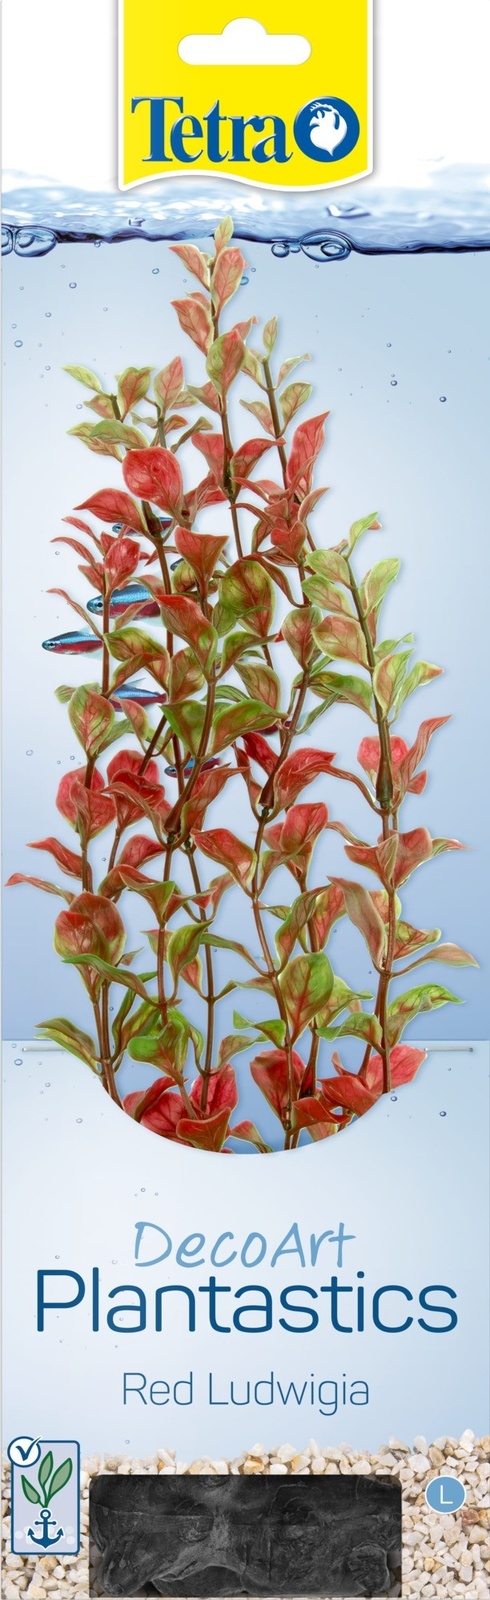 Tetra (оборудование) Tetra (оборудование) растение DecoArt Plantastics Red Ludvigia 30 см (115 г) tetra оборудование tetra оборудование распылитель as 25 7 г